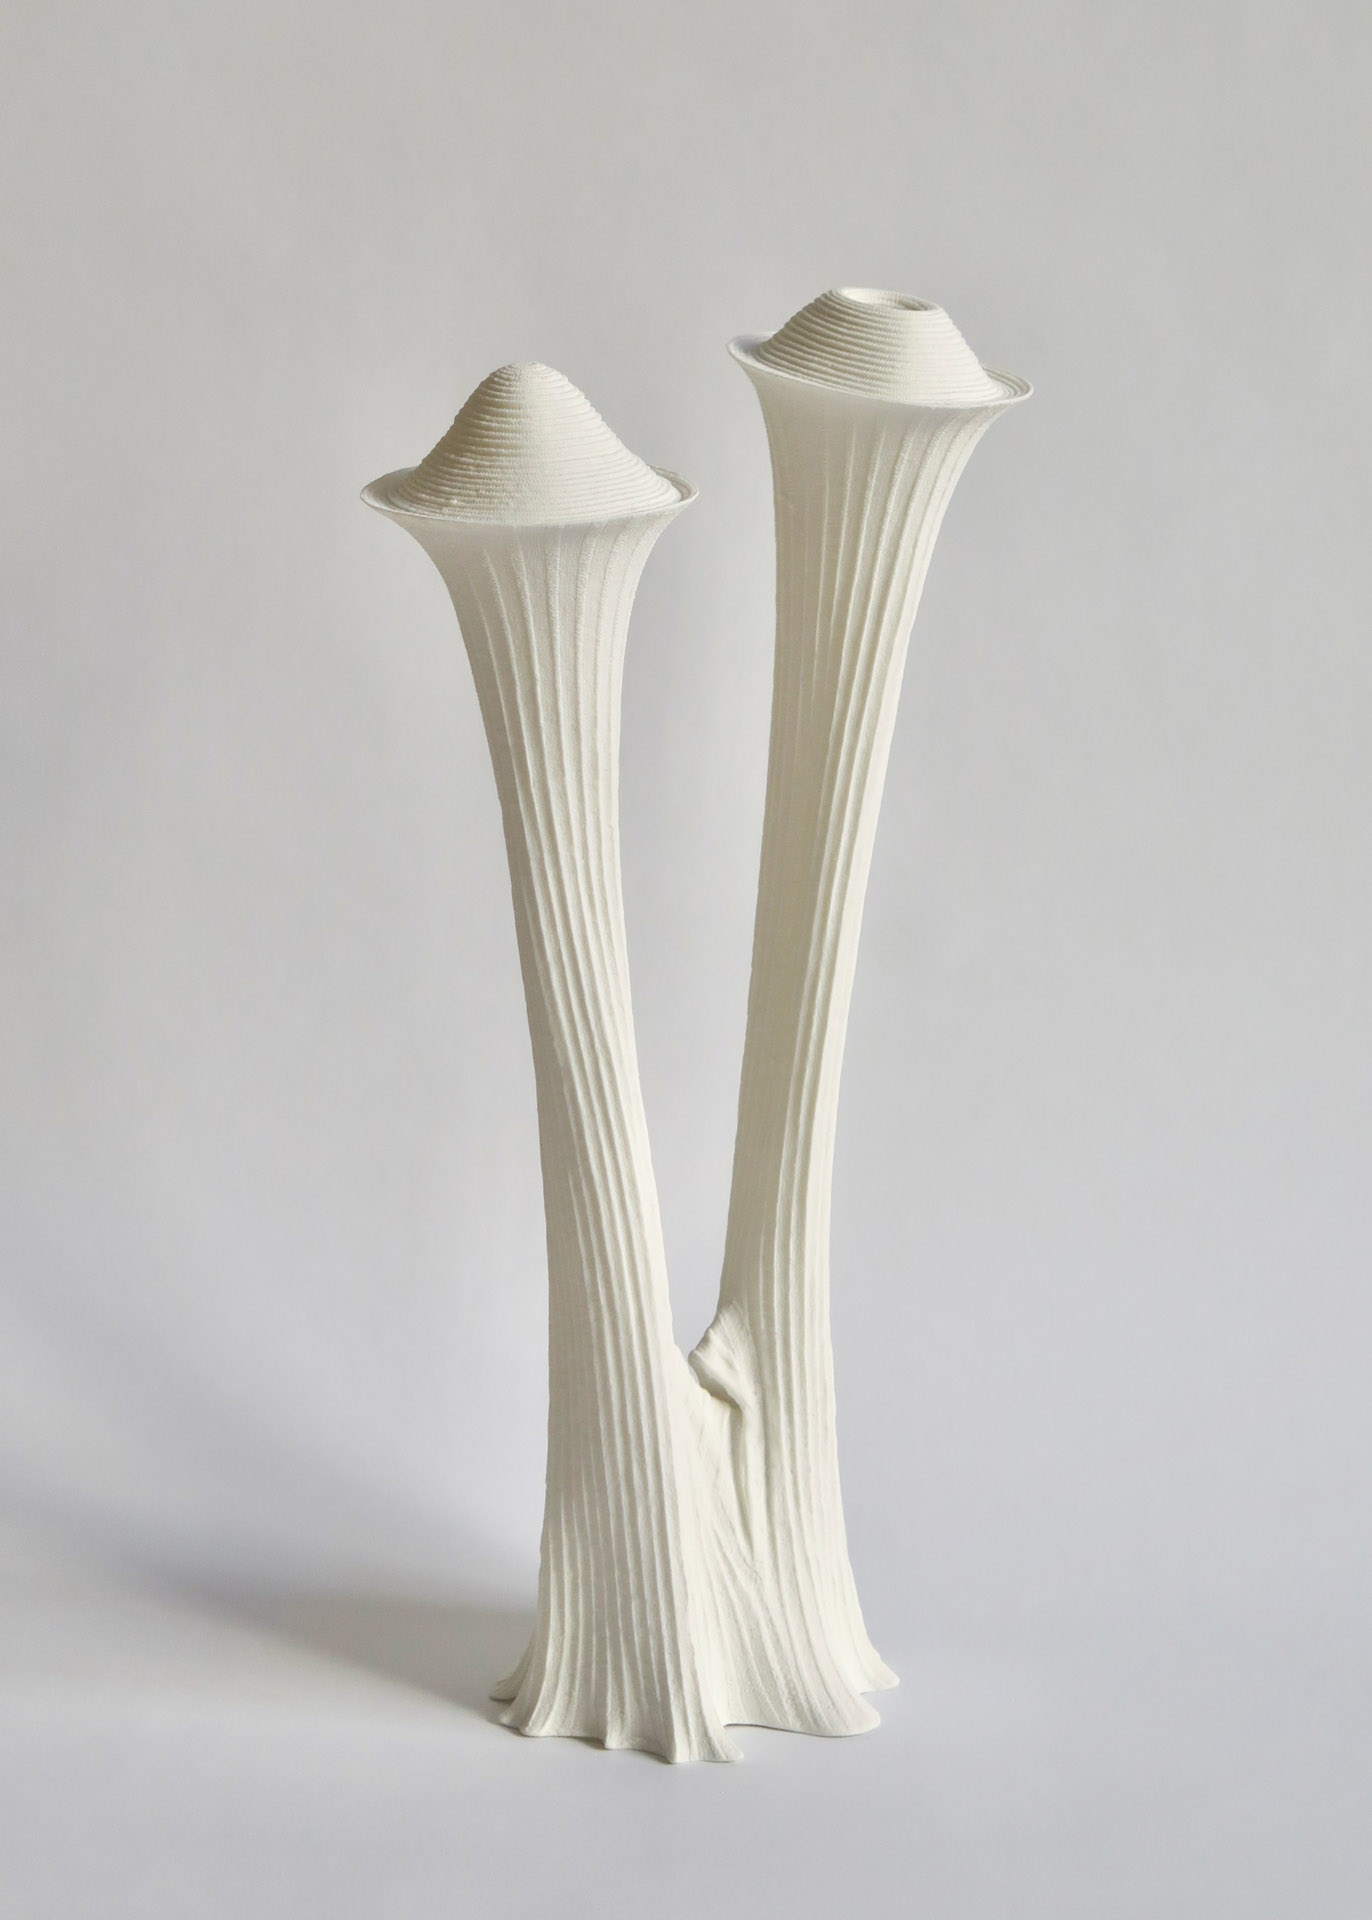 "Jardin d’hiver", 2019. Porcelaine, impression par coulage - Ø 10 x H. 34 cm